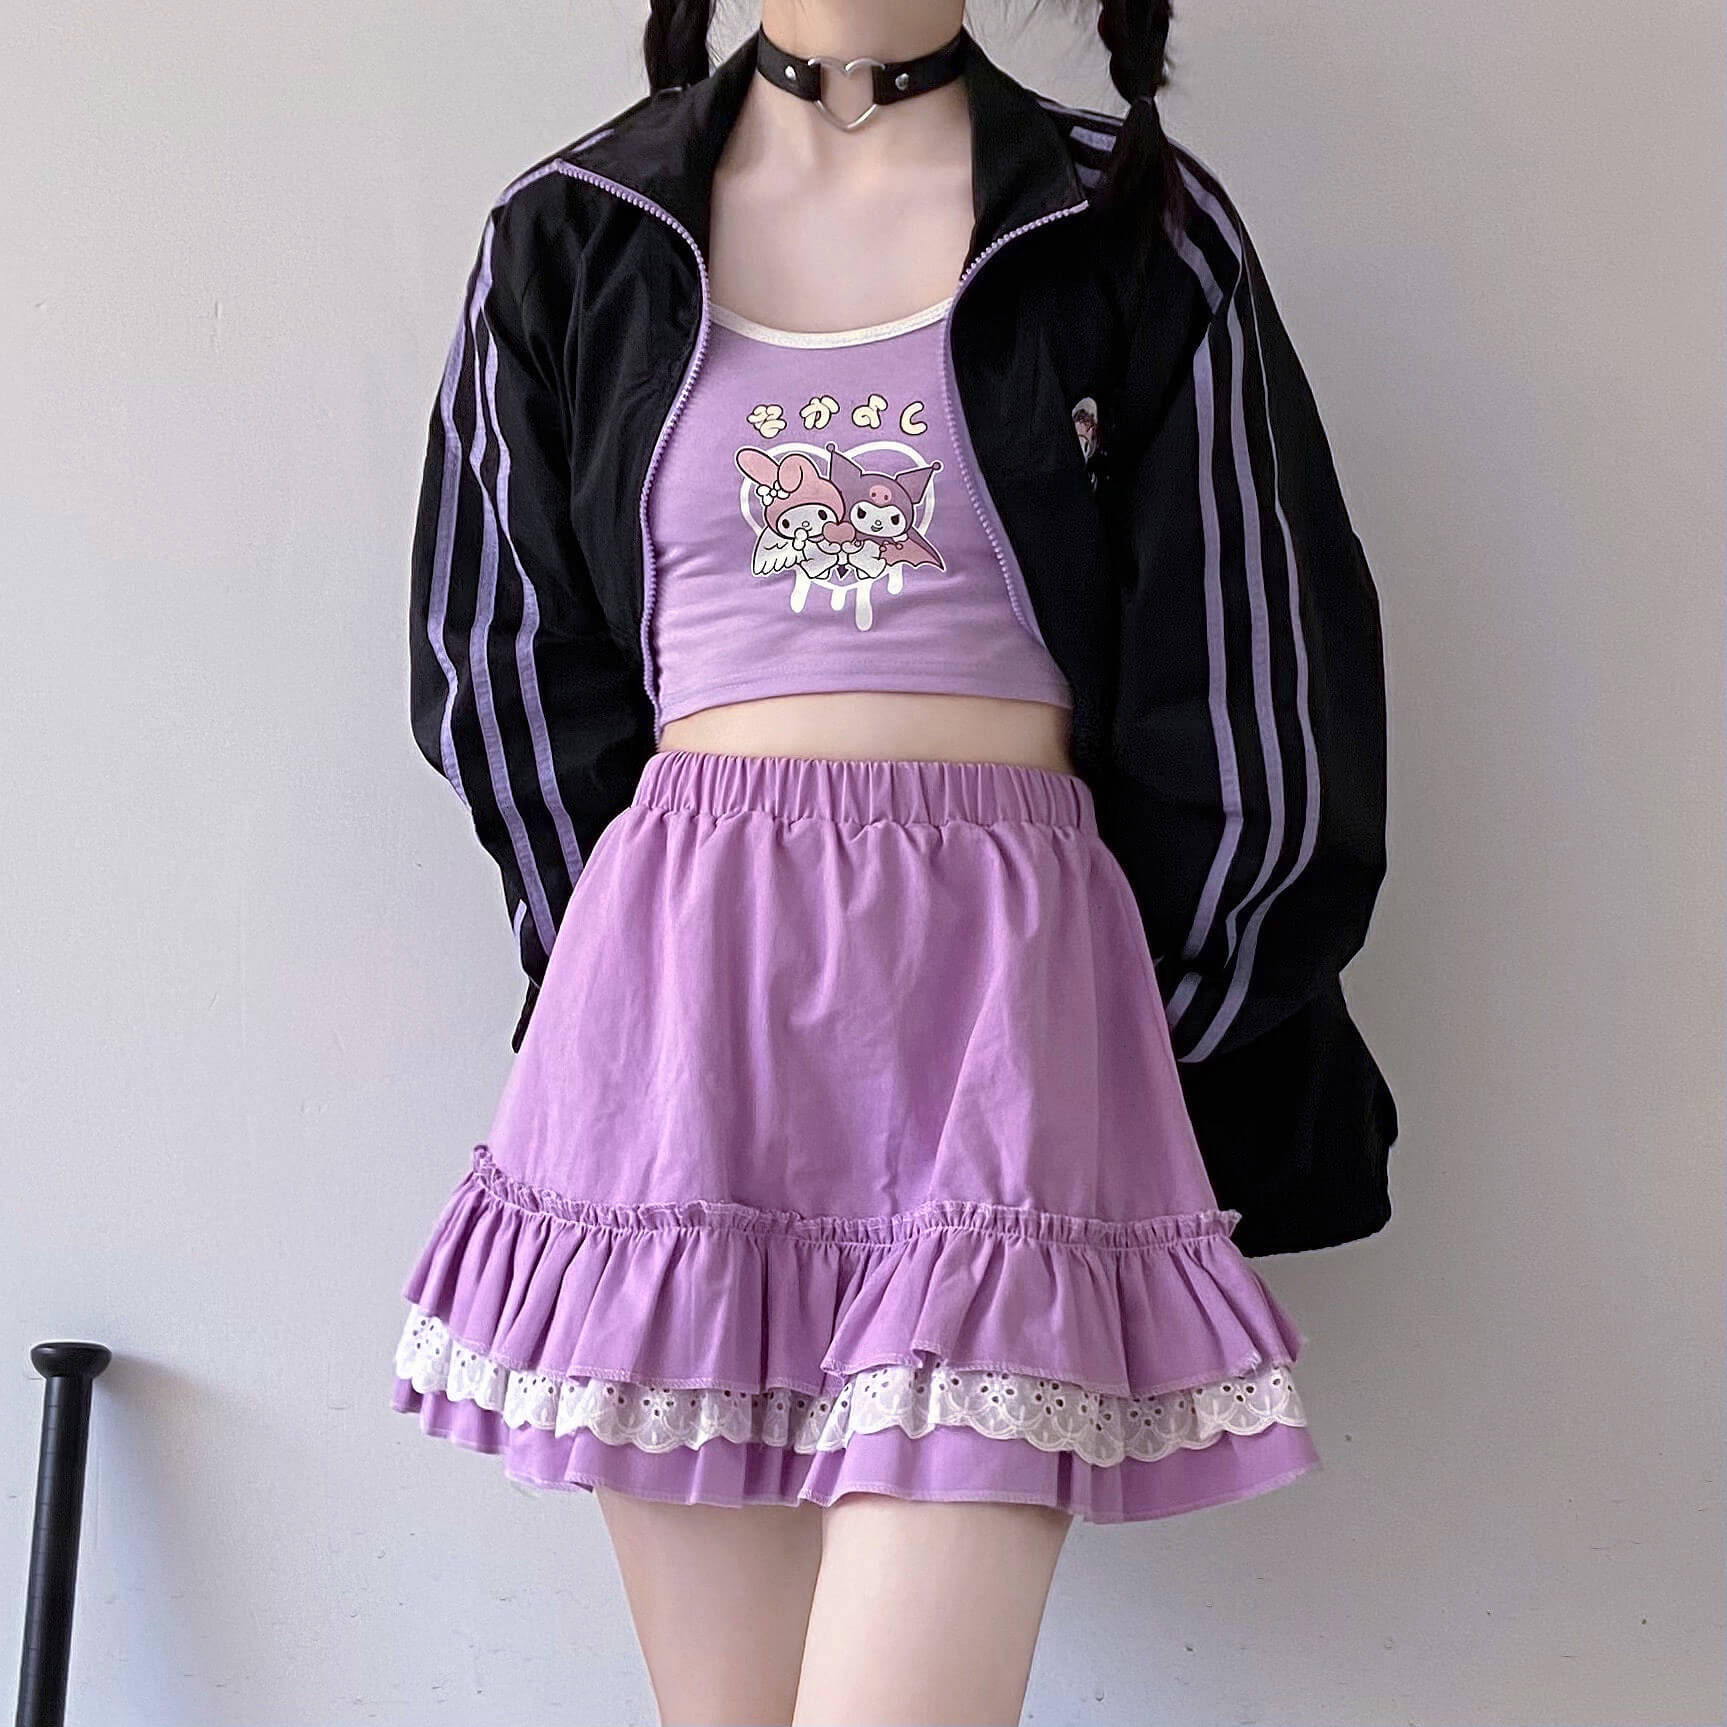 Lolita Mesh Skater Skirt in Lavender LG/XL